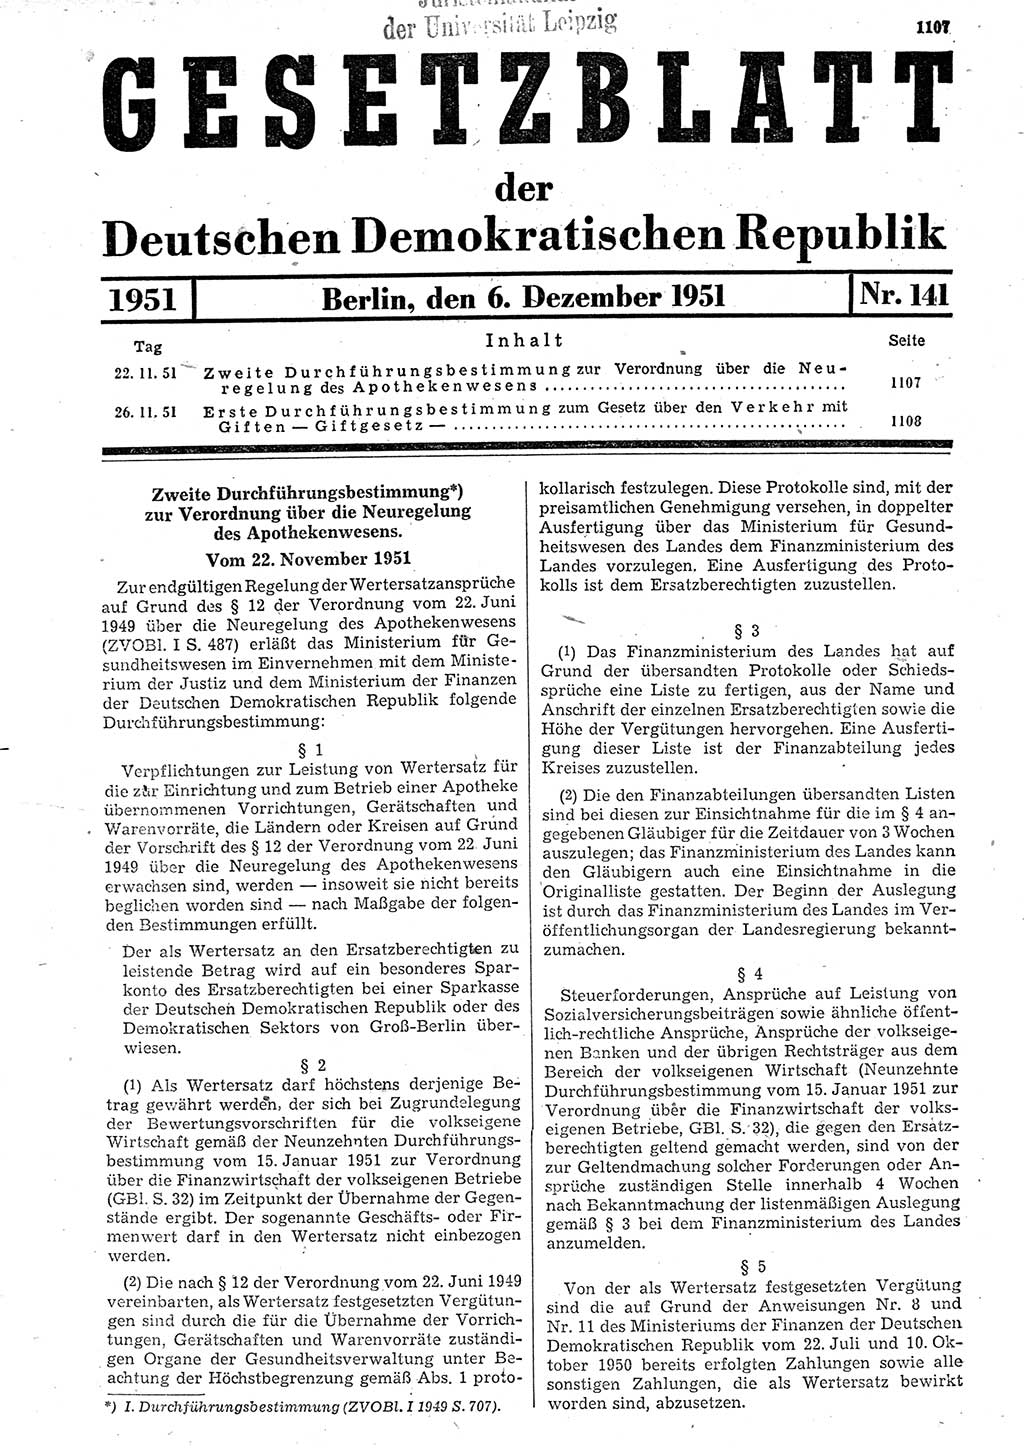 Gesetzblatt (GBl.) der Deutschen Demokratischen Republik (DDR) 1951, Seite 1107 (GBl. DDR 1951, S. 1107)